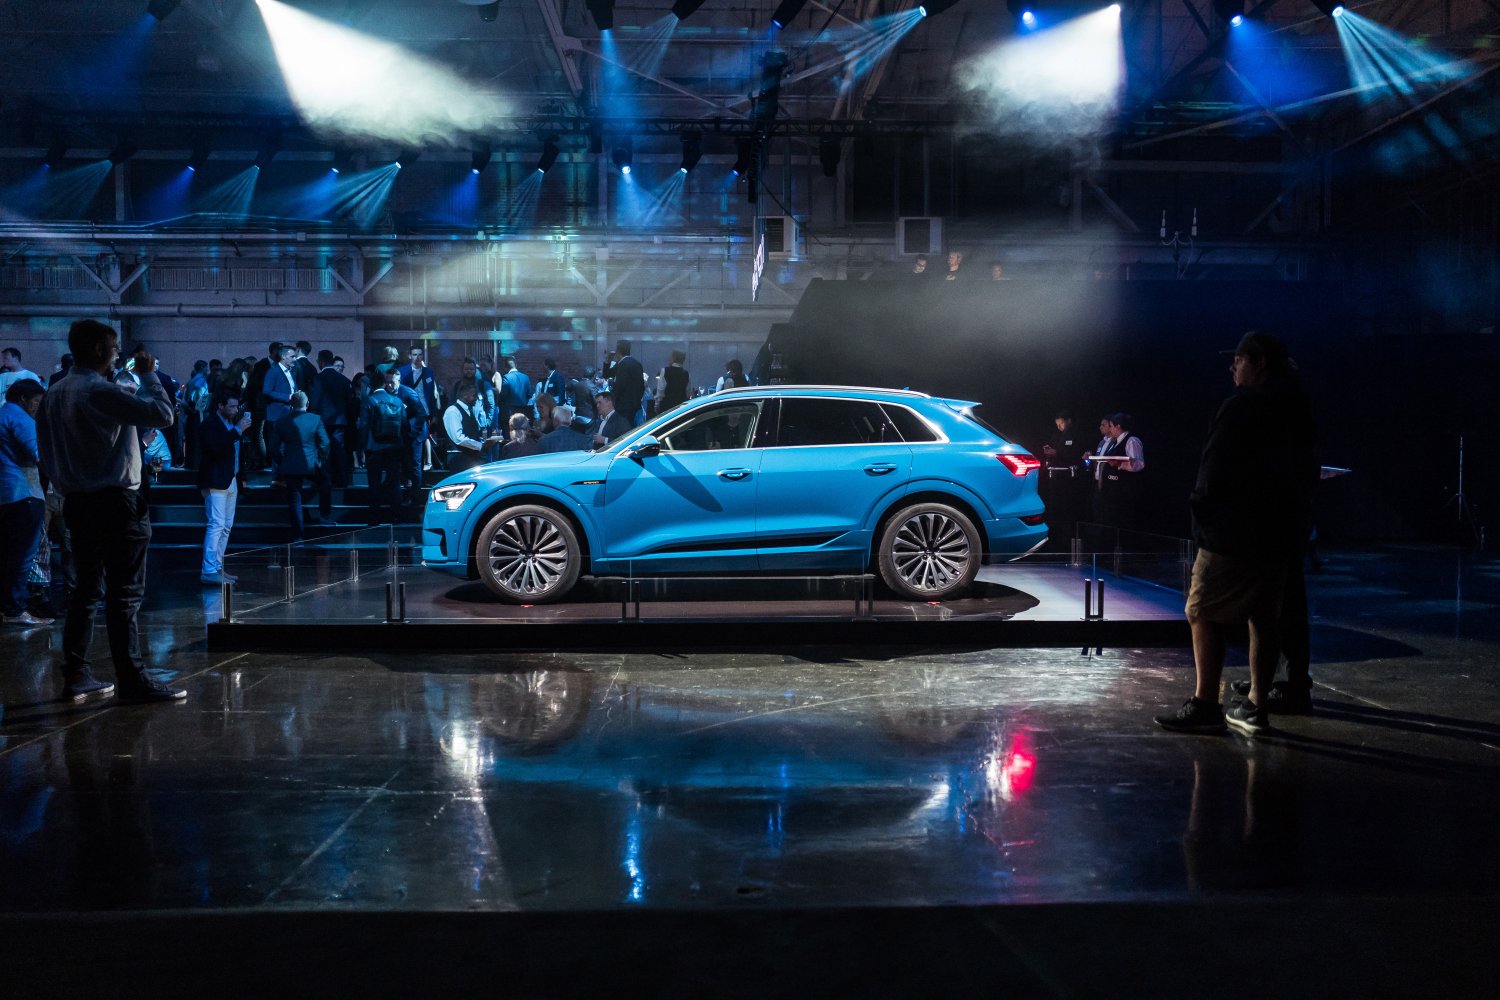 Audi je nakon predstavljanja u San Franciscu svoj električni SUV e-tron predstavio i u Parizu. Kompaktni SUV broji 402 konjske snage, ubrzava do sto kilometara na sat za 5,5 sekundi, a baterija od 95 kW mu daje domet od 480 kilometara. Objavili su da već sada imaju 10.000 rezervacija, a službena cijena niti datum početka prodaje u Europi još uvijek nisu poznati. Trebao bi stići tijekom 2019. godine.